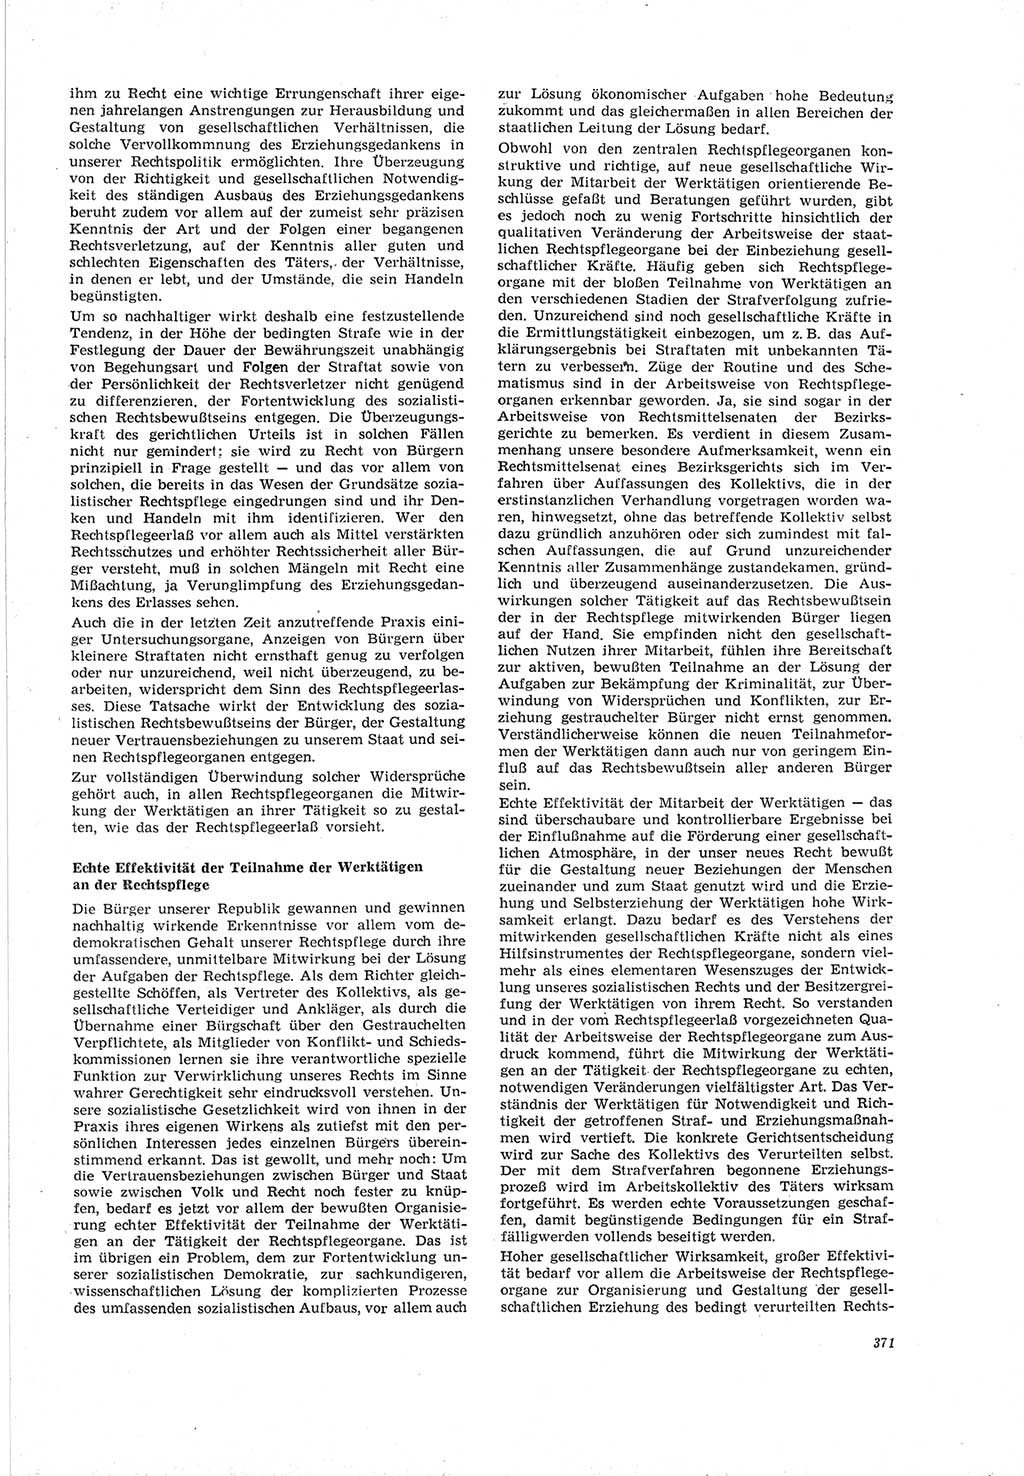 Neue Justiz (NJ), Zeitschrift für Recht und Rechtswissenschaft [Deutsche Demokratische Republik (DDR)], 19. Jahrgang 1965, Seite 371 (NJ DDR 1965, S. 371)